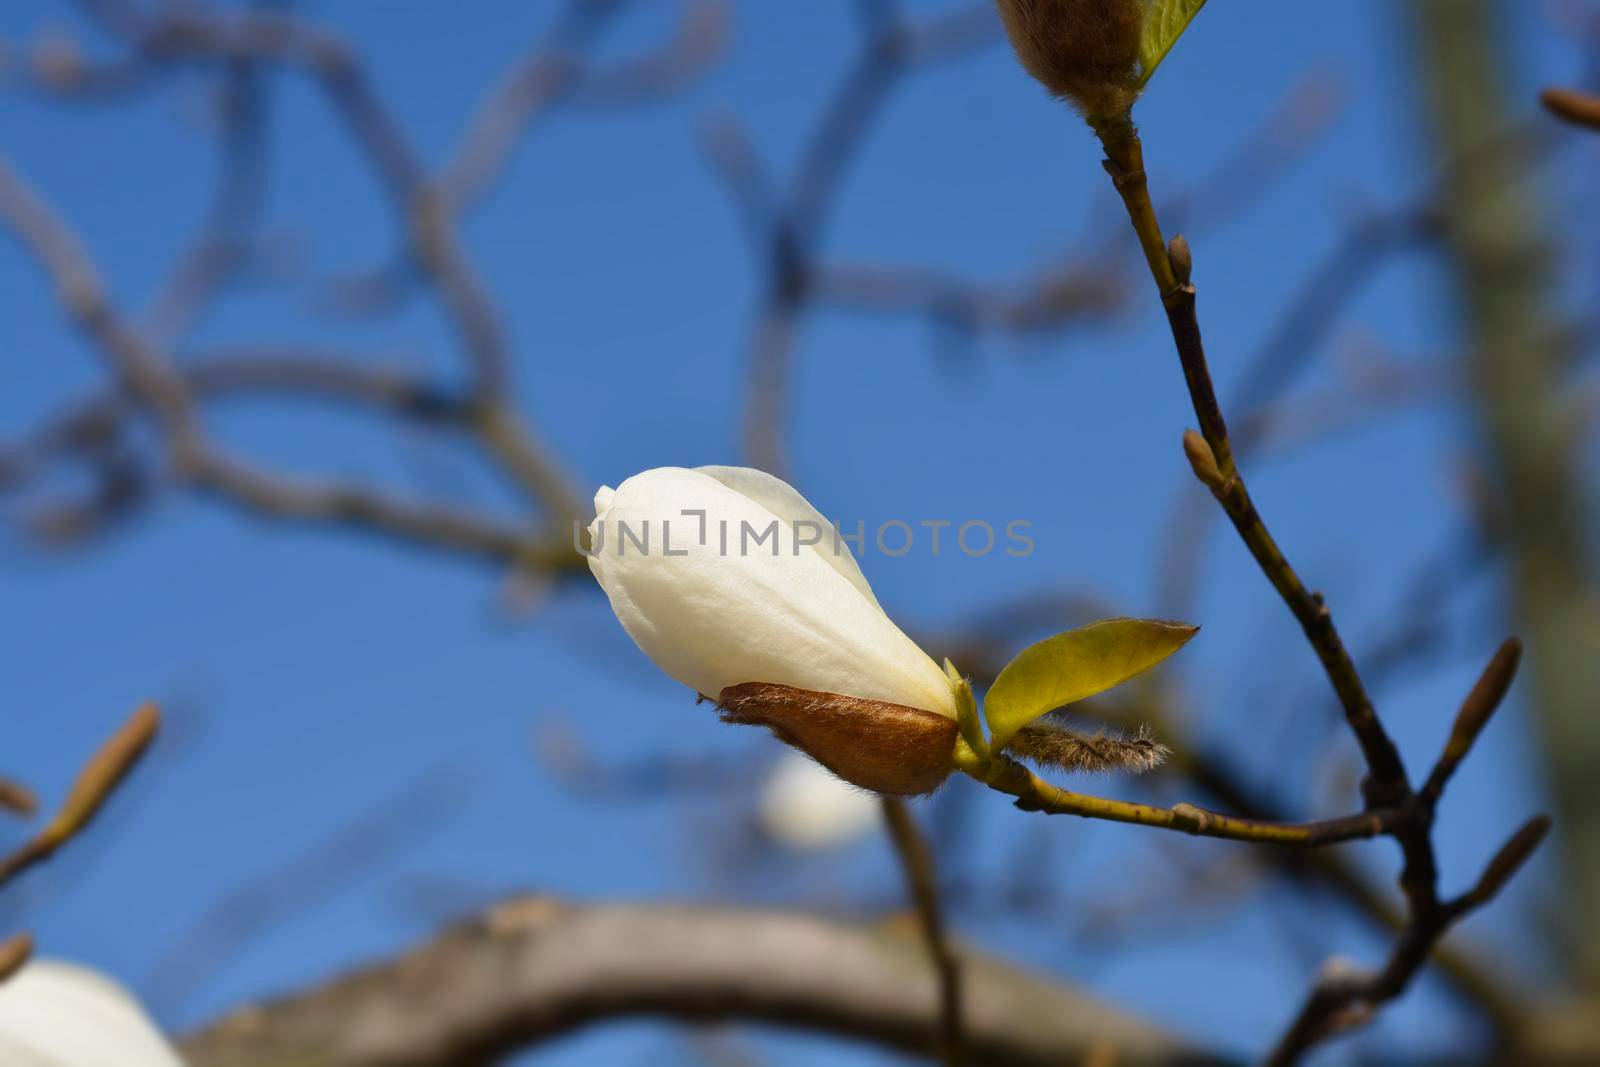 Magnolia tree by nahhan